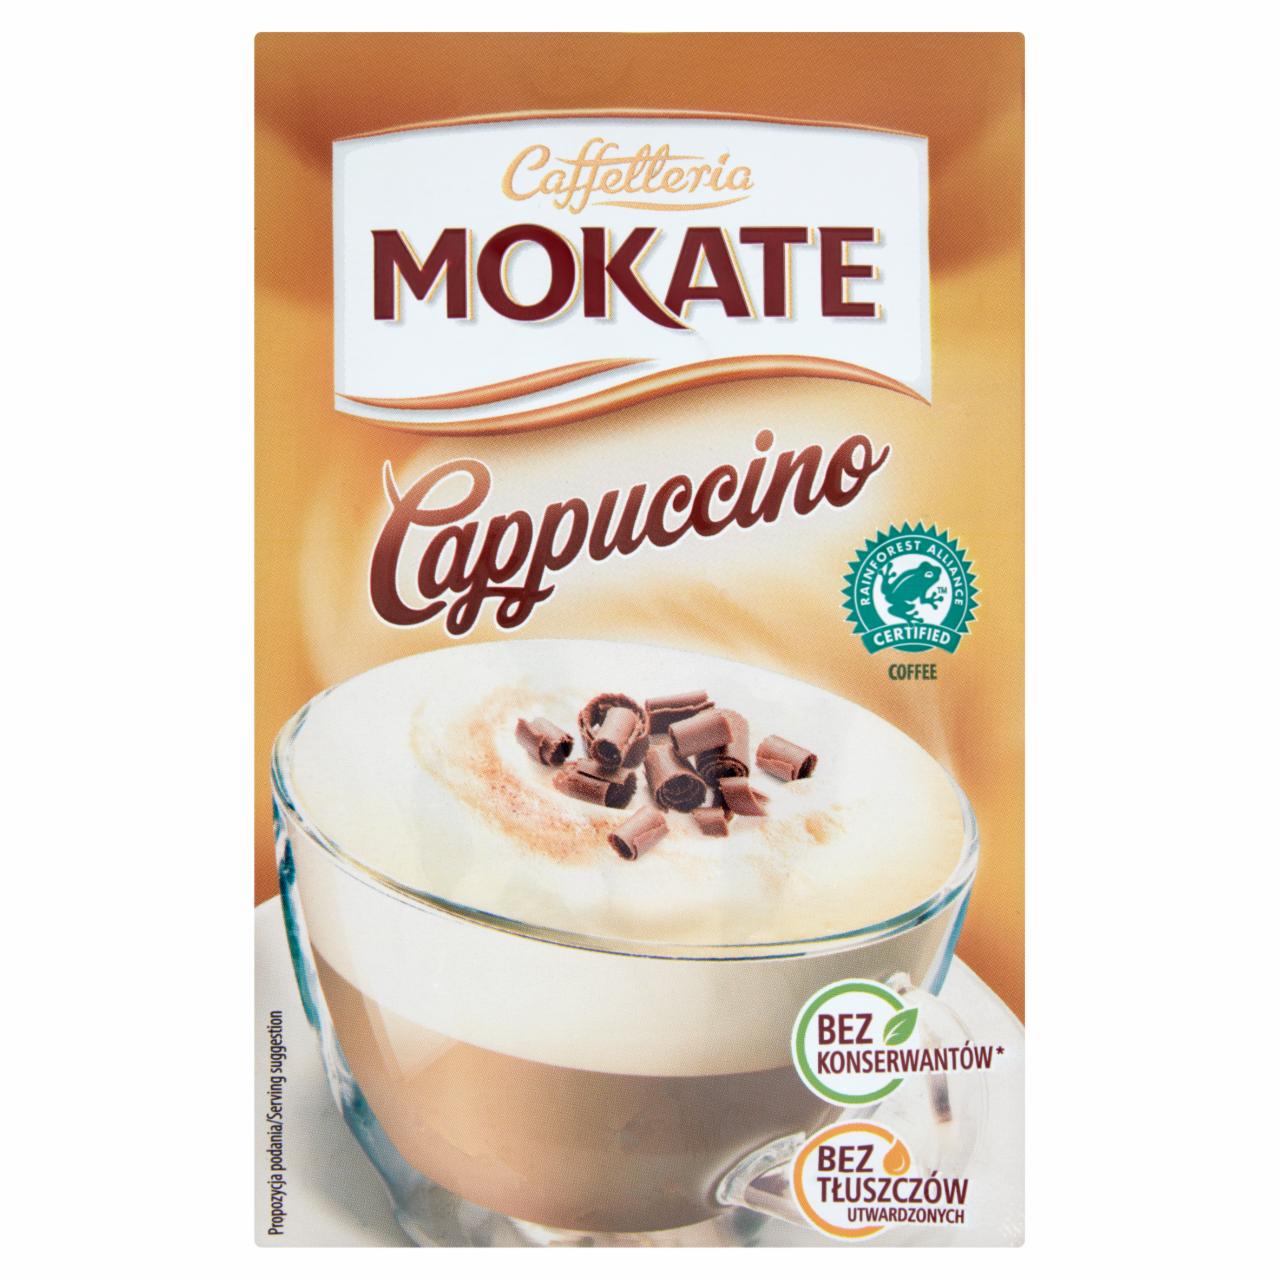 Zdjęcia - Mokate Caffetteria Cappuccino z belgijską czekoladą 15 g